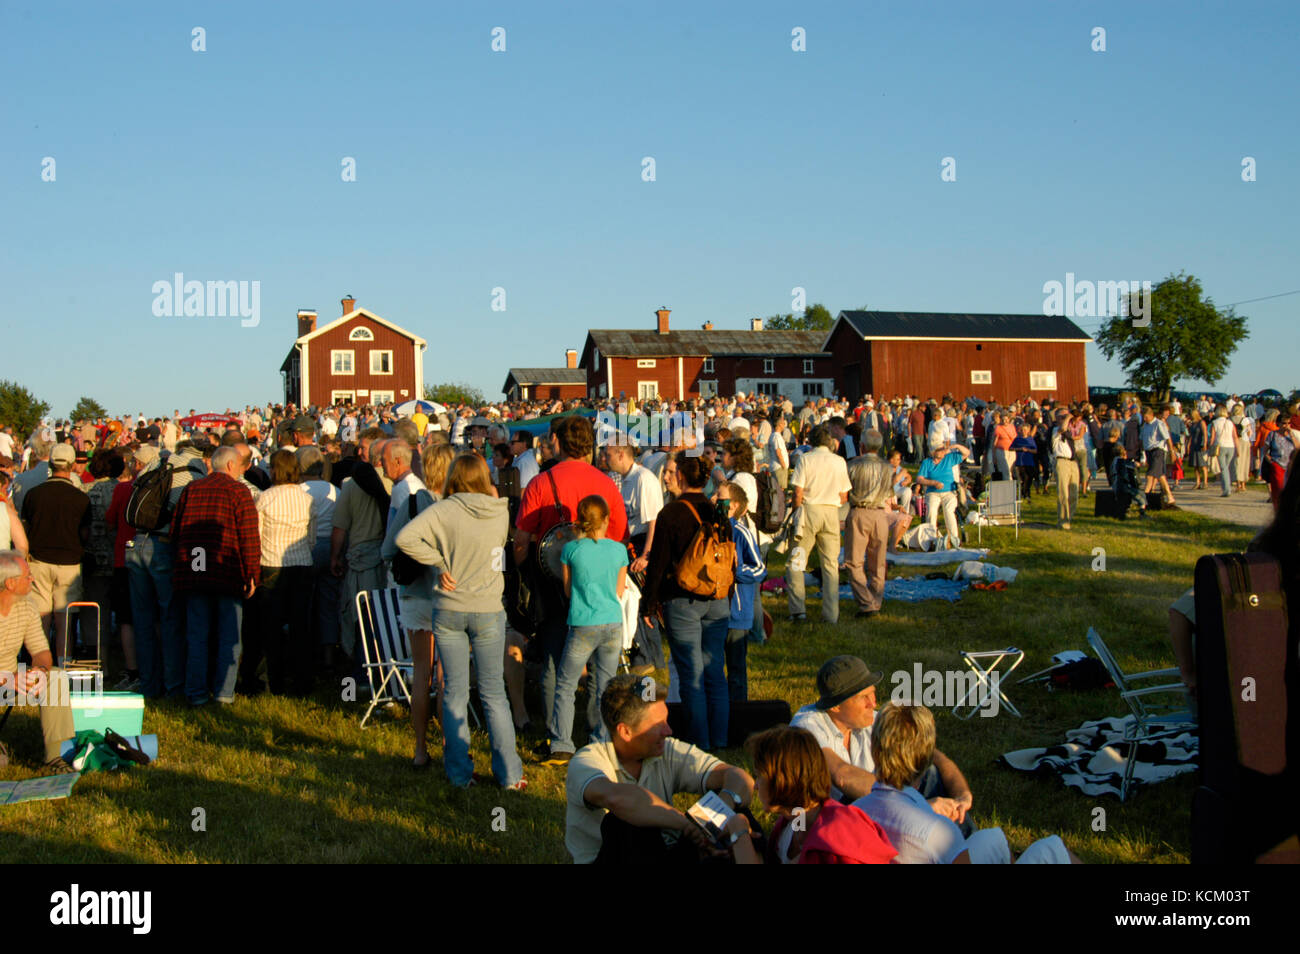 Folk music in Bingsjo, Dalecarlia, Sweden Stock Photo